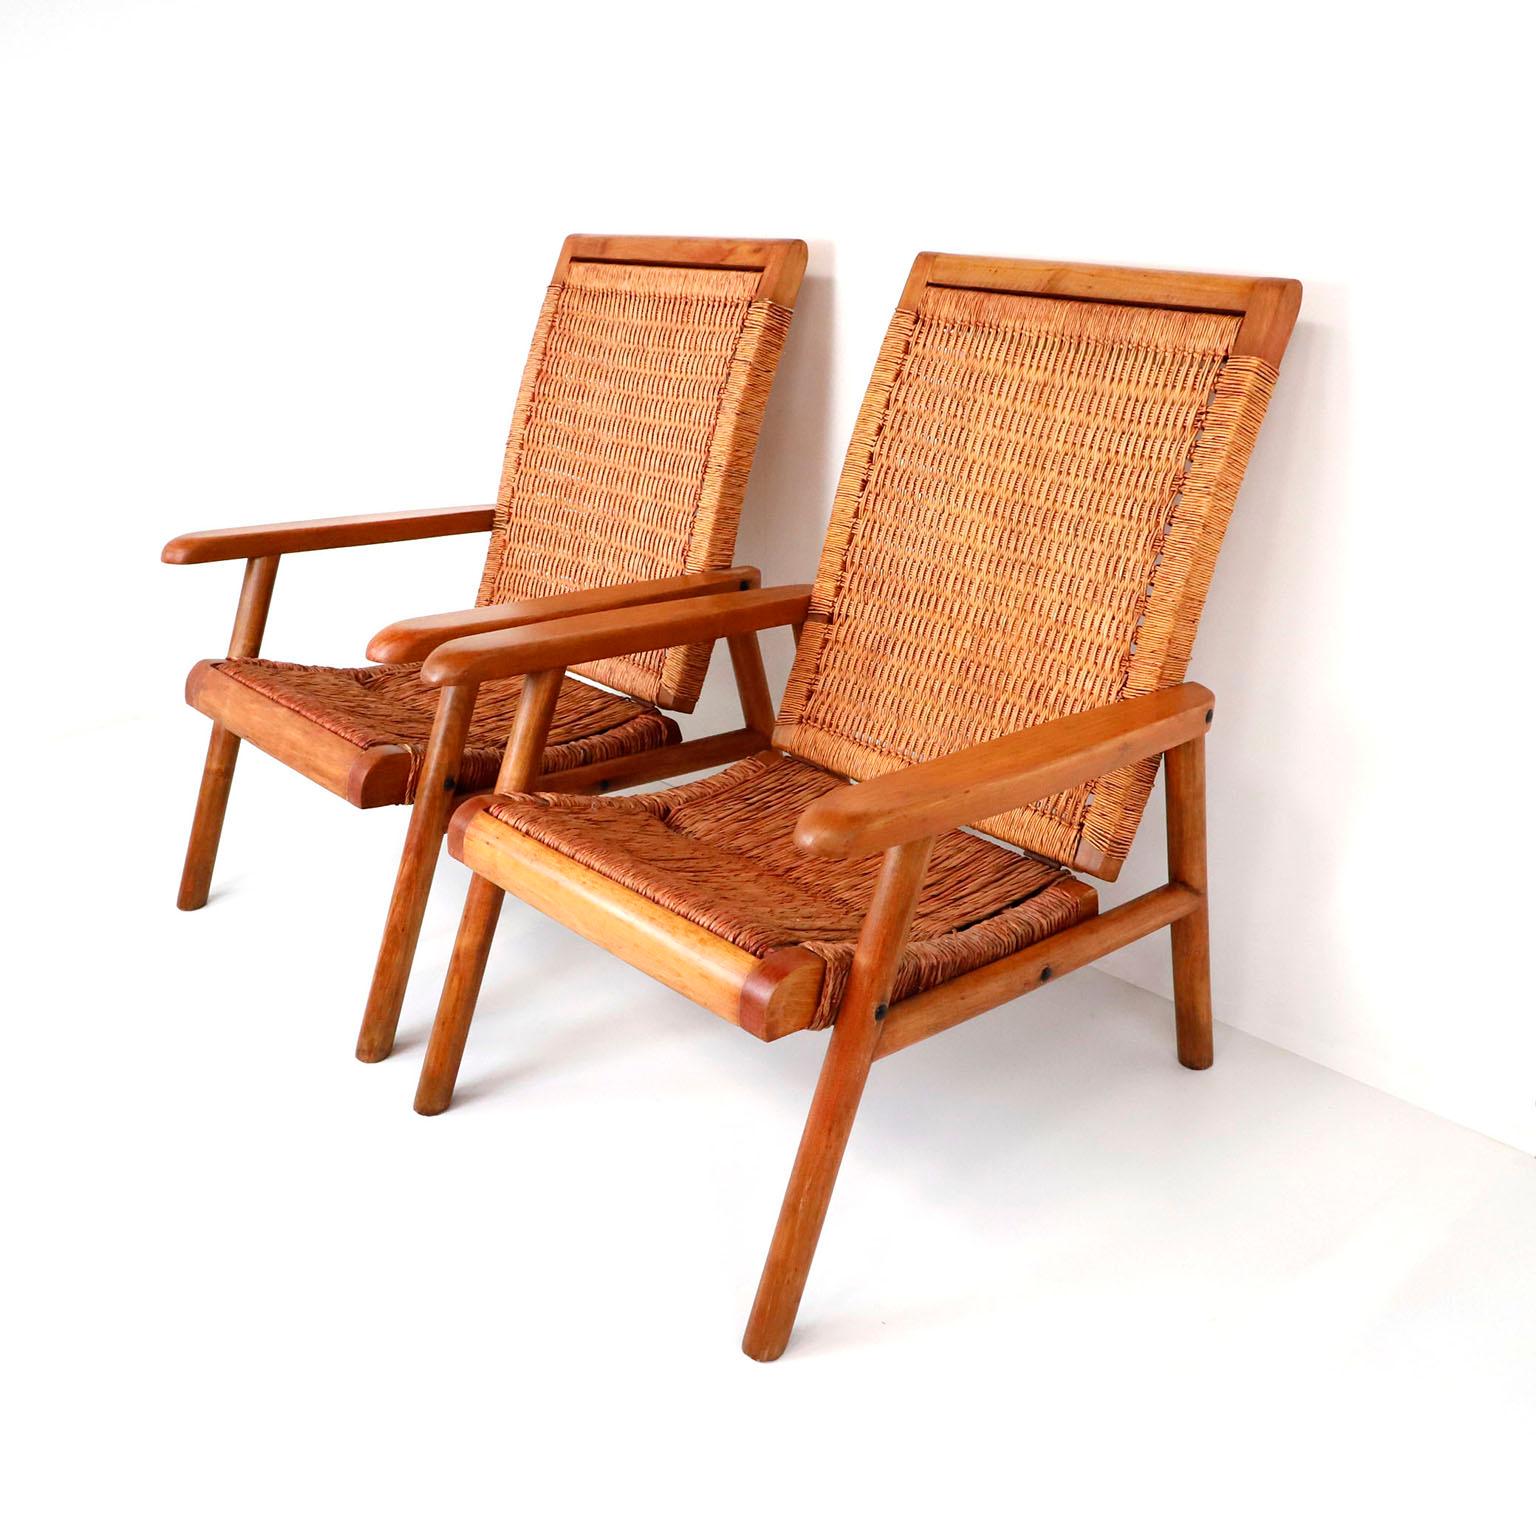 Ein Paar mexikanischer geflochtener Loungesessel aus der Mitte des Jahrhunderts, hergestellt in den 1950er Jahren. Mit seinem schlichten, aber eleganten, modernen Gestell und der geschwungenen Sitzfläche bietet dieser Stuhl mit seiner schön